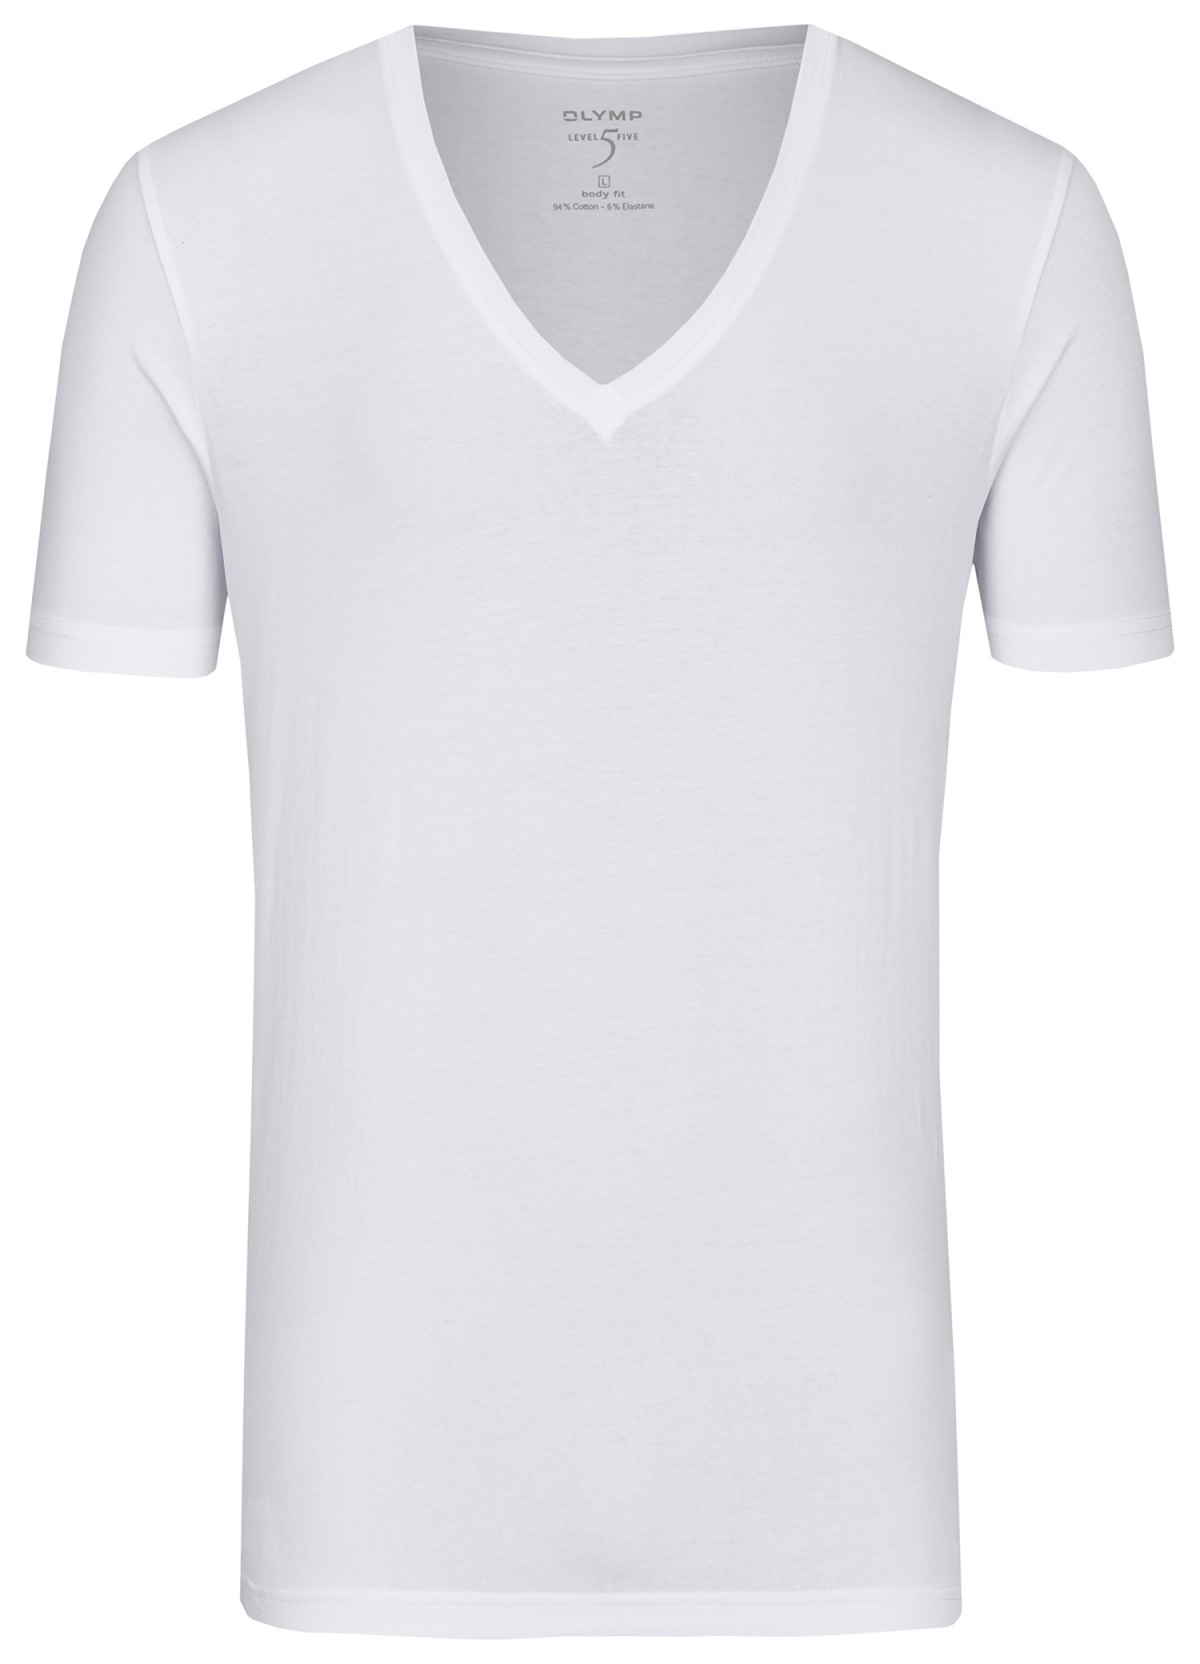 Level Body - T-Shirt tiefer weiß Five Fit - OLYMP V-Ausschnitt -